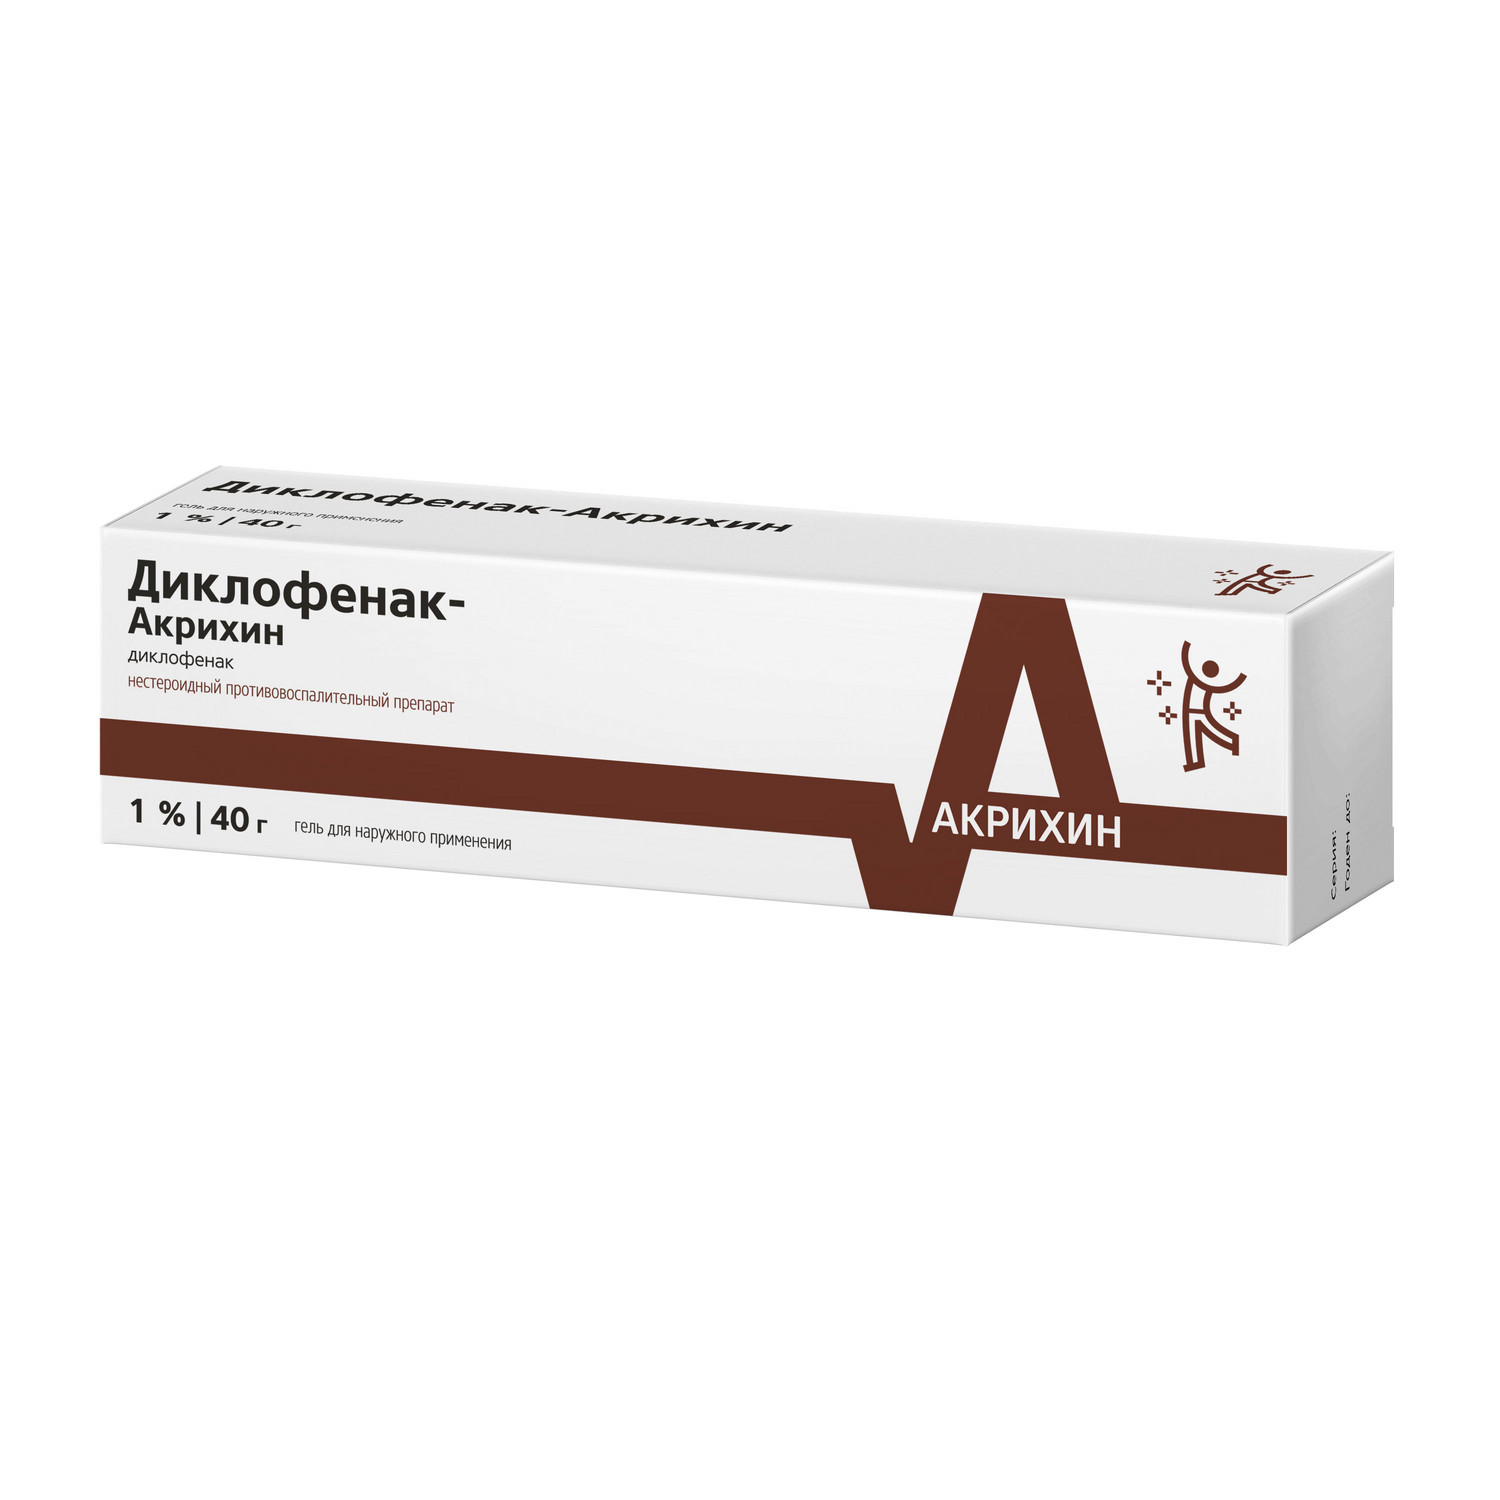 Диклофенак-Акрихин гель 1% 40г